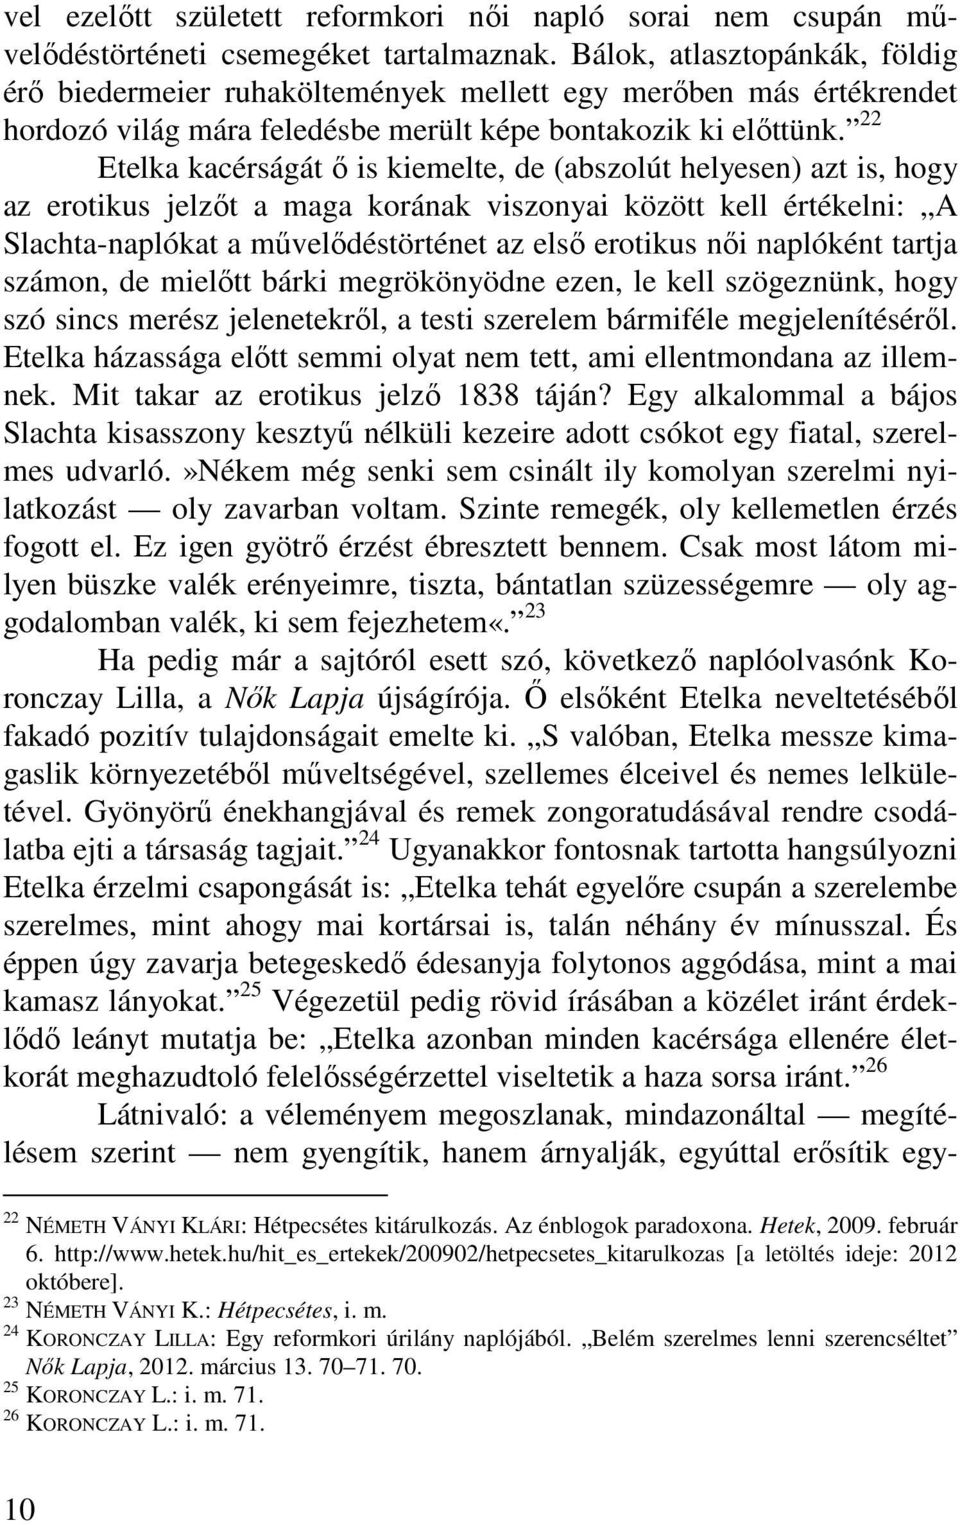 22 Etelka kacérságát ő is kiemelte, de (abszolút helyesen) azt is, hogy az erotikus jelzőt a maga korának viszonyai között kell értékelni: A Slachta-naplókat a művelődéstörténet az első erotikus női